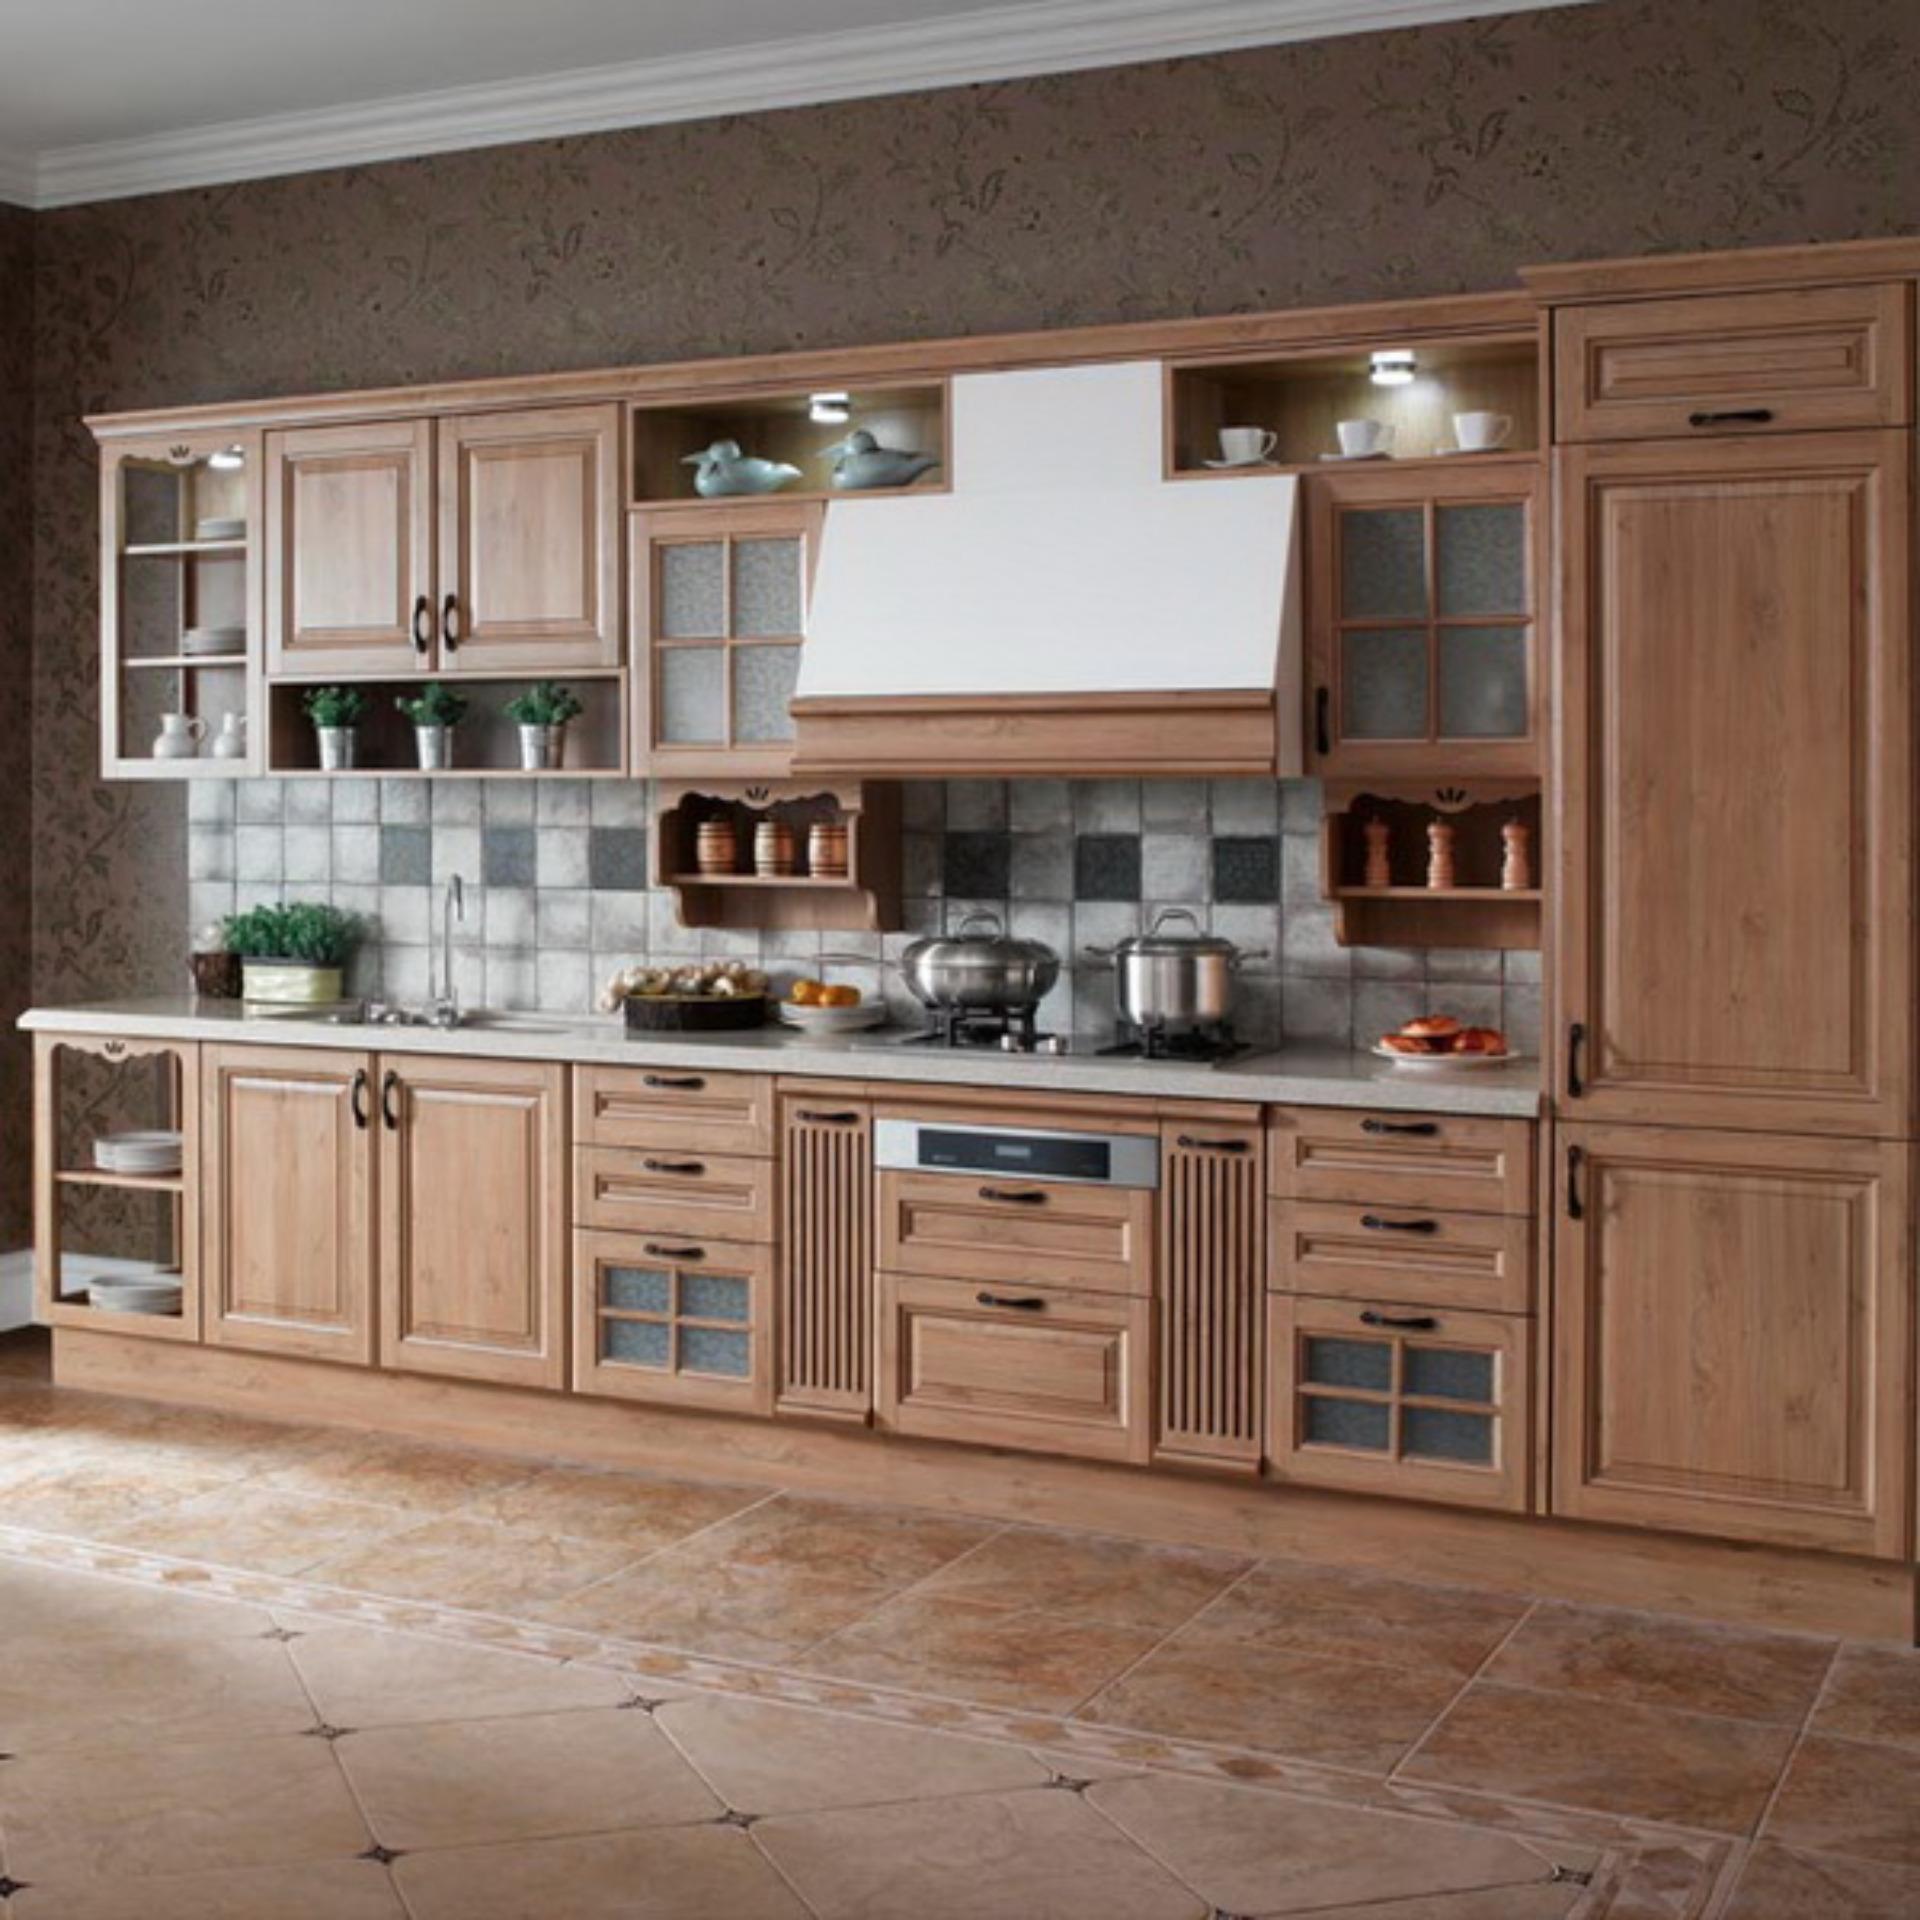 Tủ bếp gỗ cung cấp từ xưởng mộc theo thiết kế – hàng đặt chất lượng, giá rẻ!